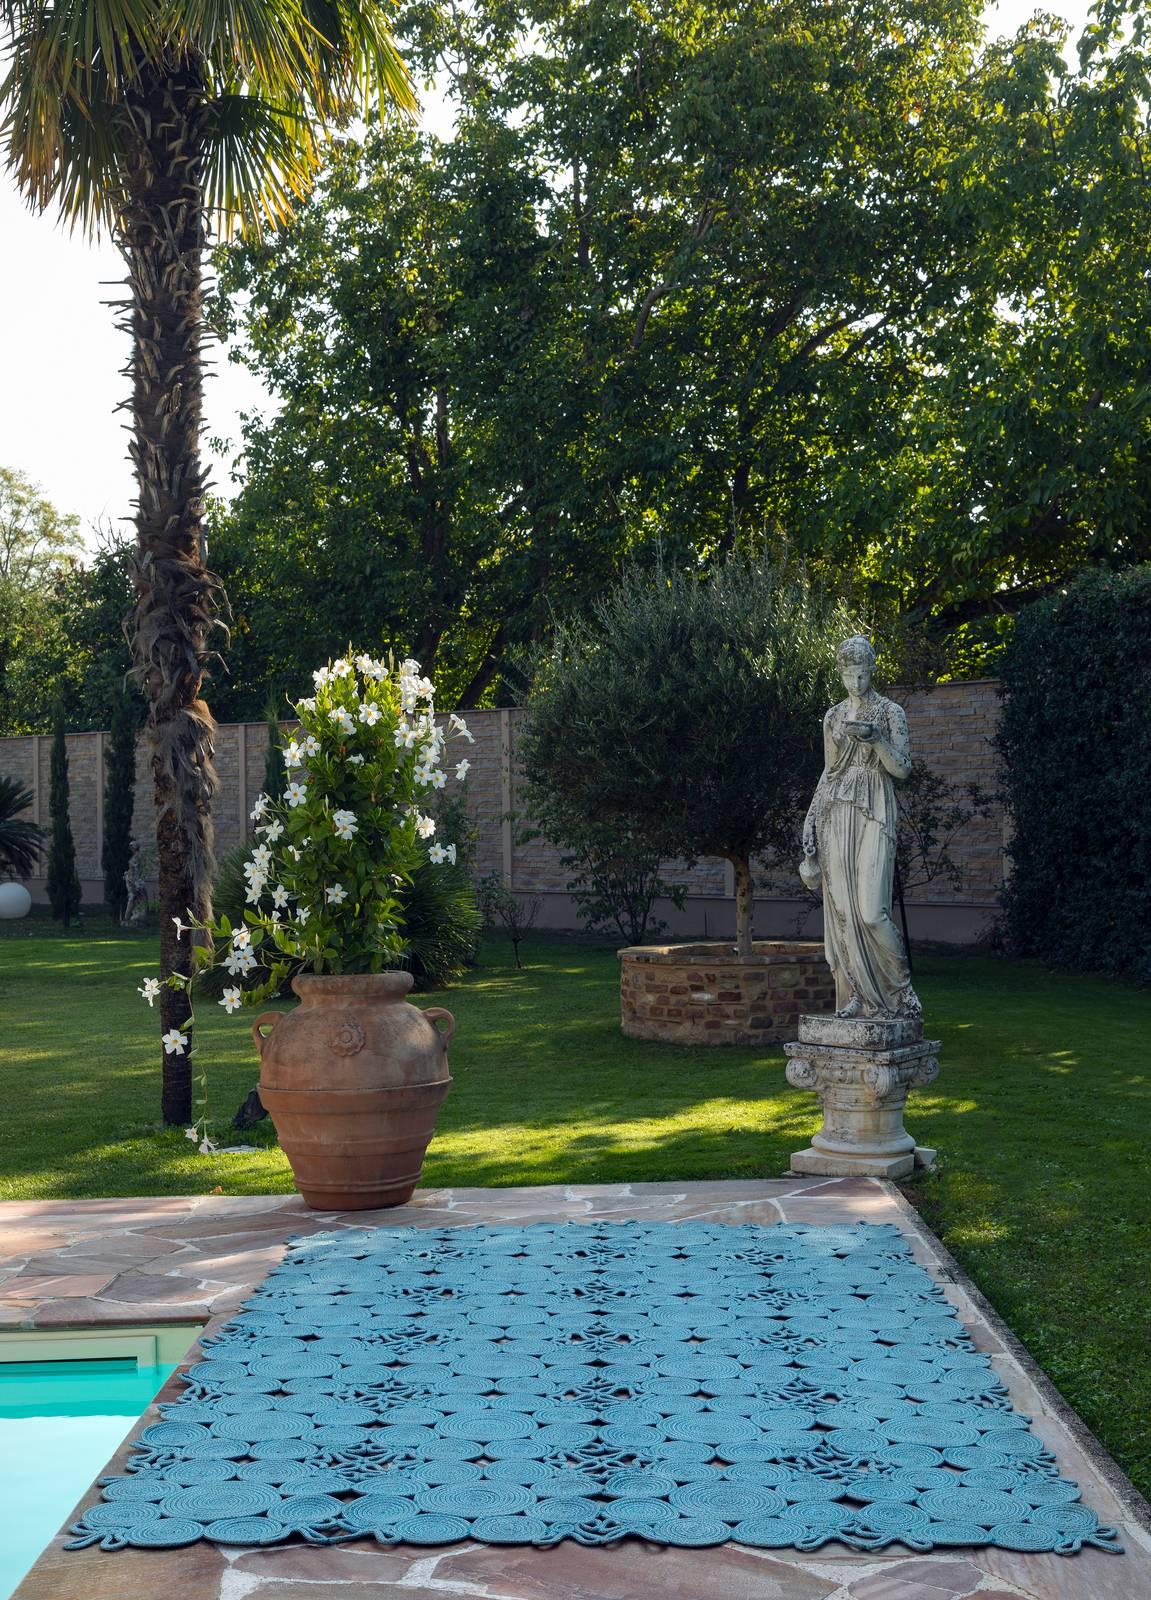 Outdoor Flatweave plastica tappeti giardino veranda barbecue Area a prova di fuoriuscita Tappetini geometrica 